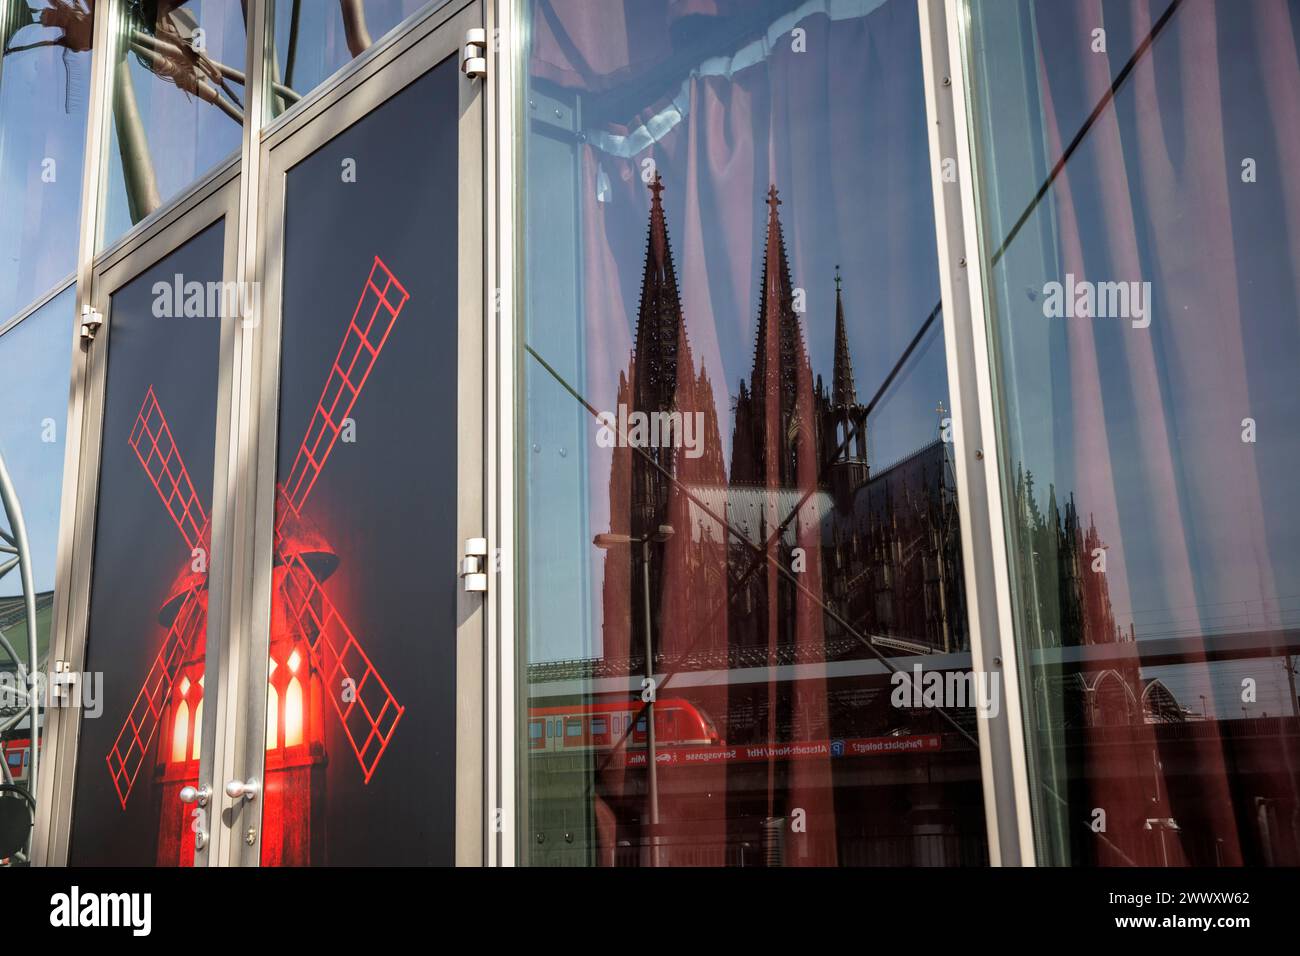 La cattedrale si riflette in una finestra del teatro tenda Musical Dome dove si sta eseguendo il Moulin Rouge, Colonia, Germania. Der Dom spi Foto Stock